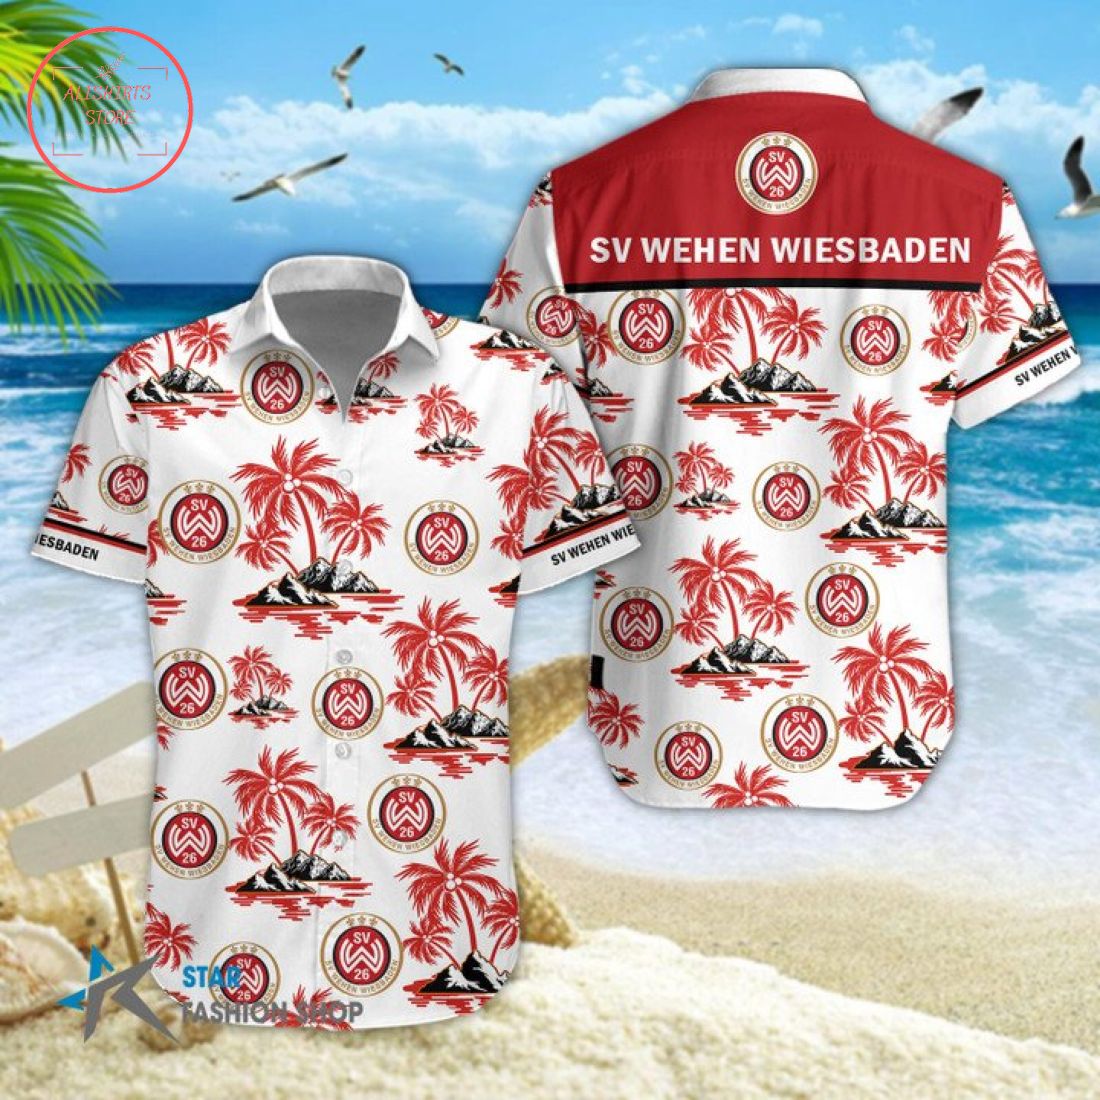 Wehen Wiesbaden Hawaiian Shirt and Beach Shorts